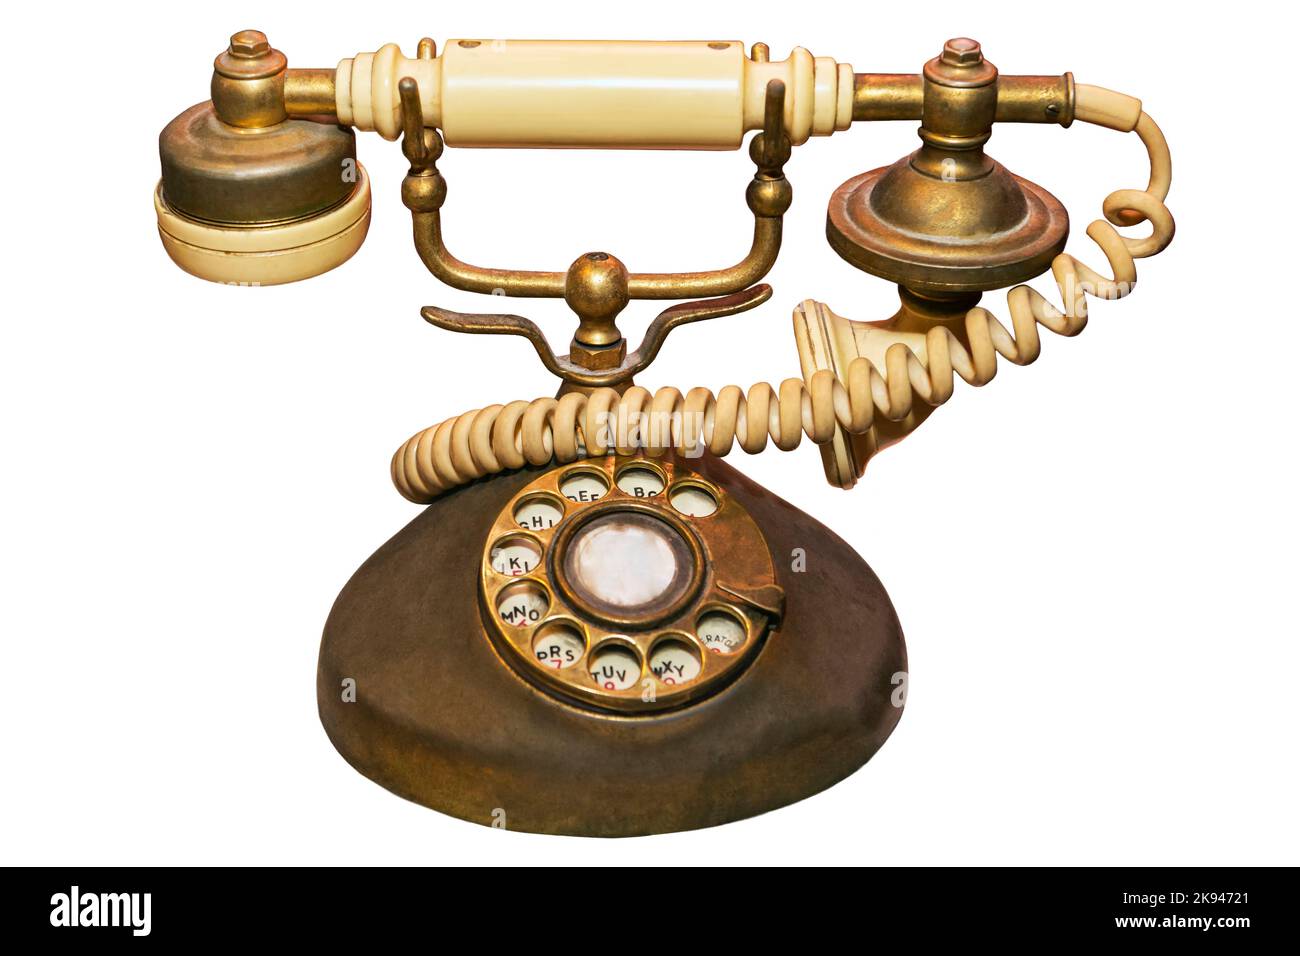 Un vecchio e usato avorio d'epoca e telefono di casa di colore dorato, un oggetto da collezione per ricordare la comunicazione dei tempi antichi Foto Stock